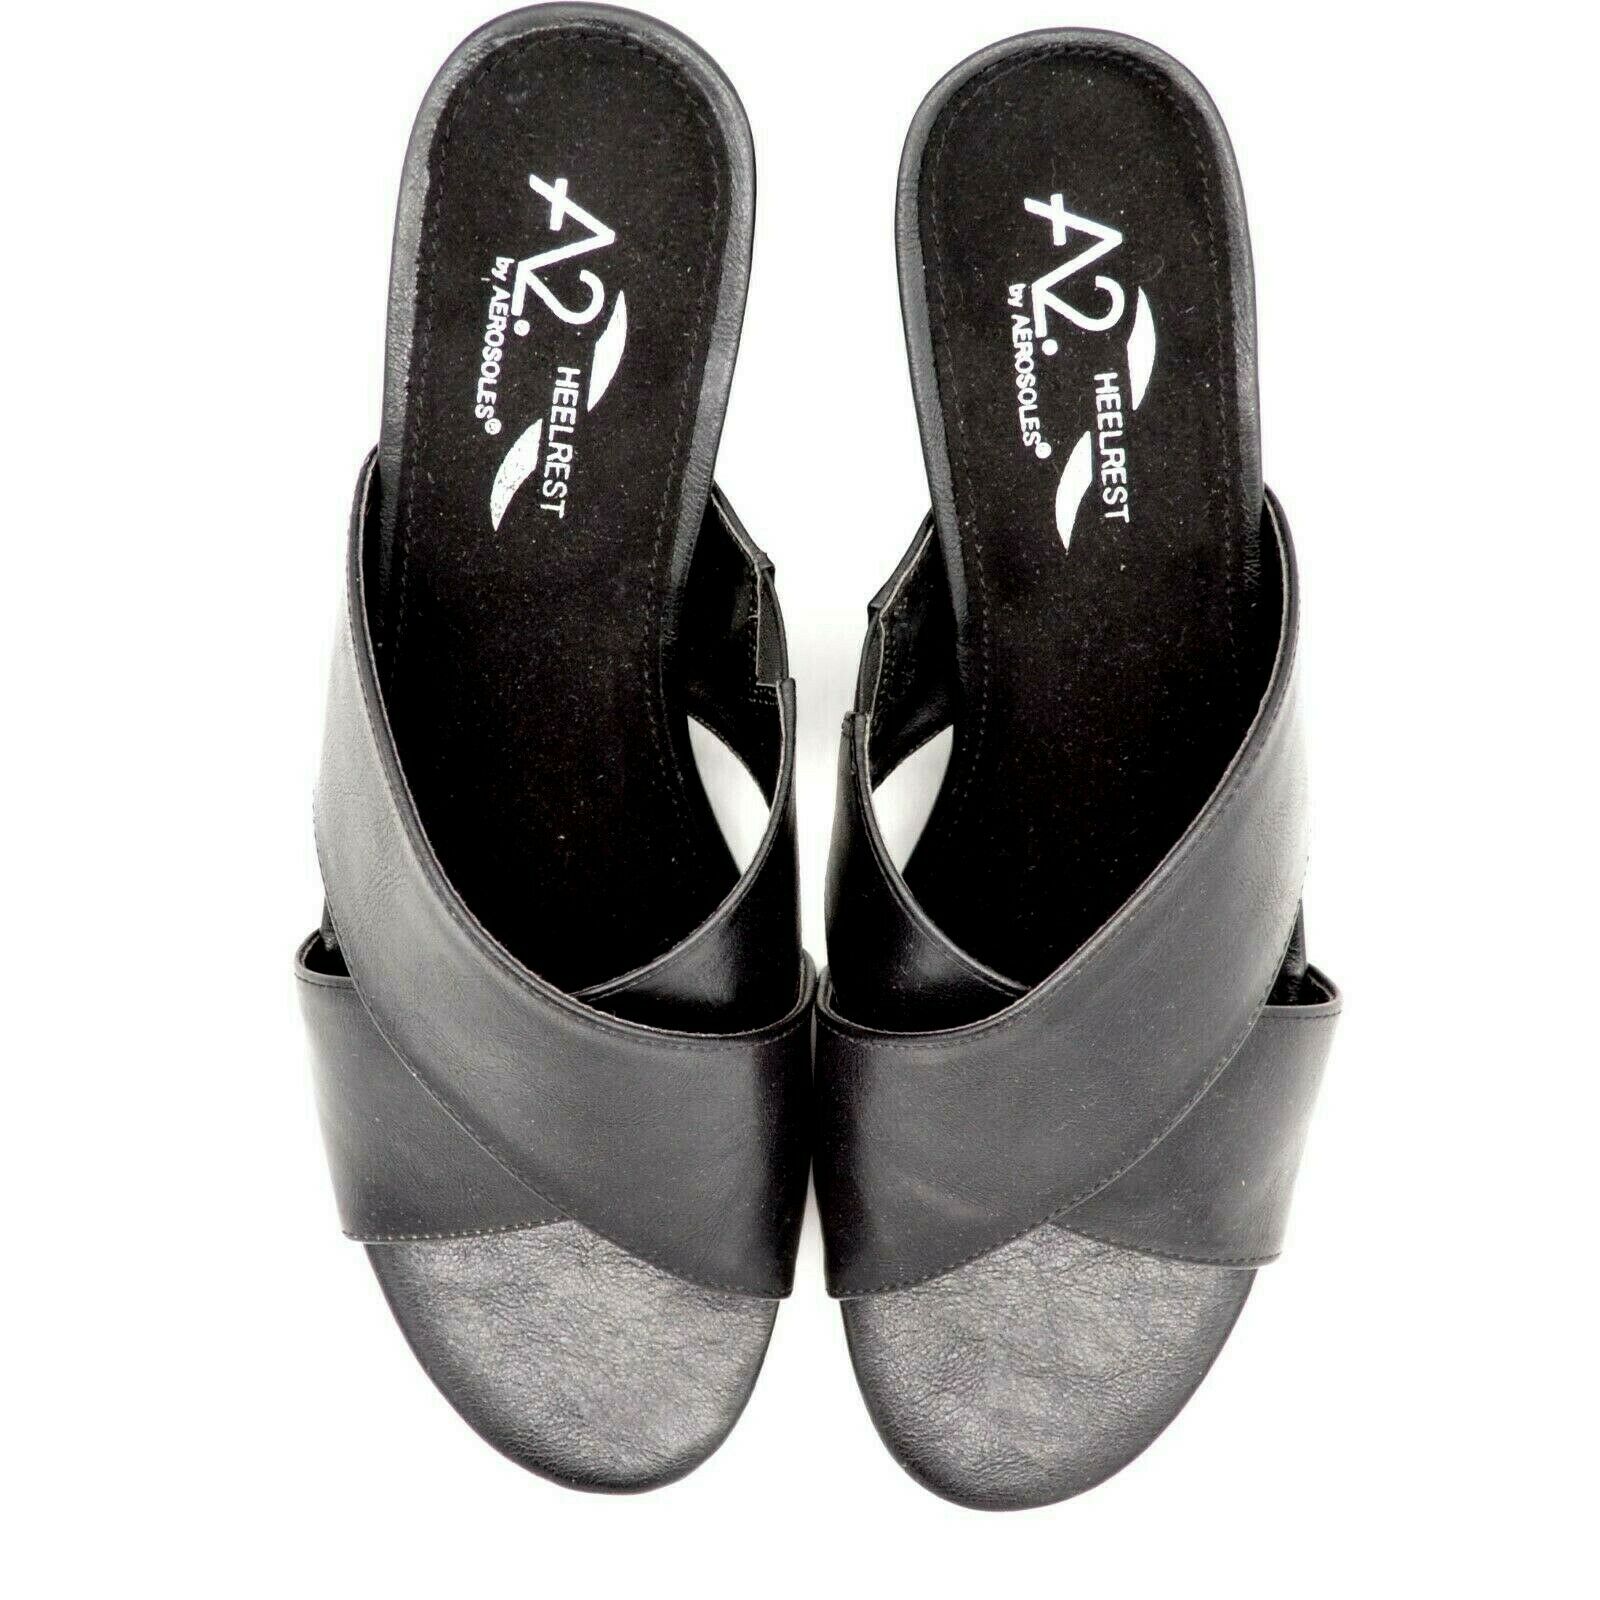 Aerosoles A2 Women's Midday Slide Sandal Black Leather open Toe Block ...